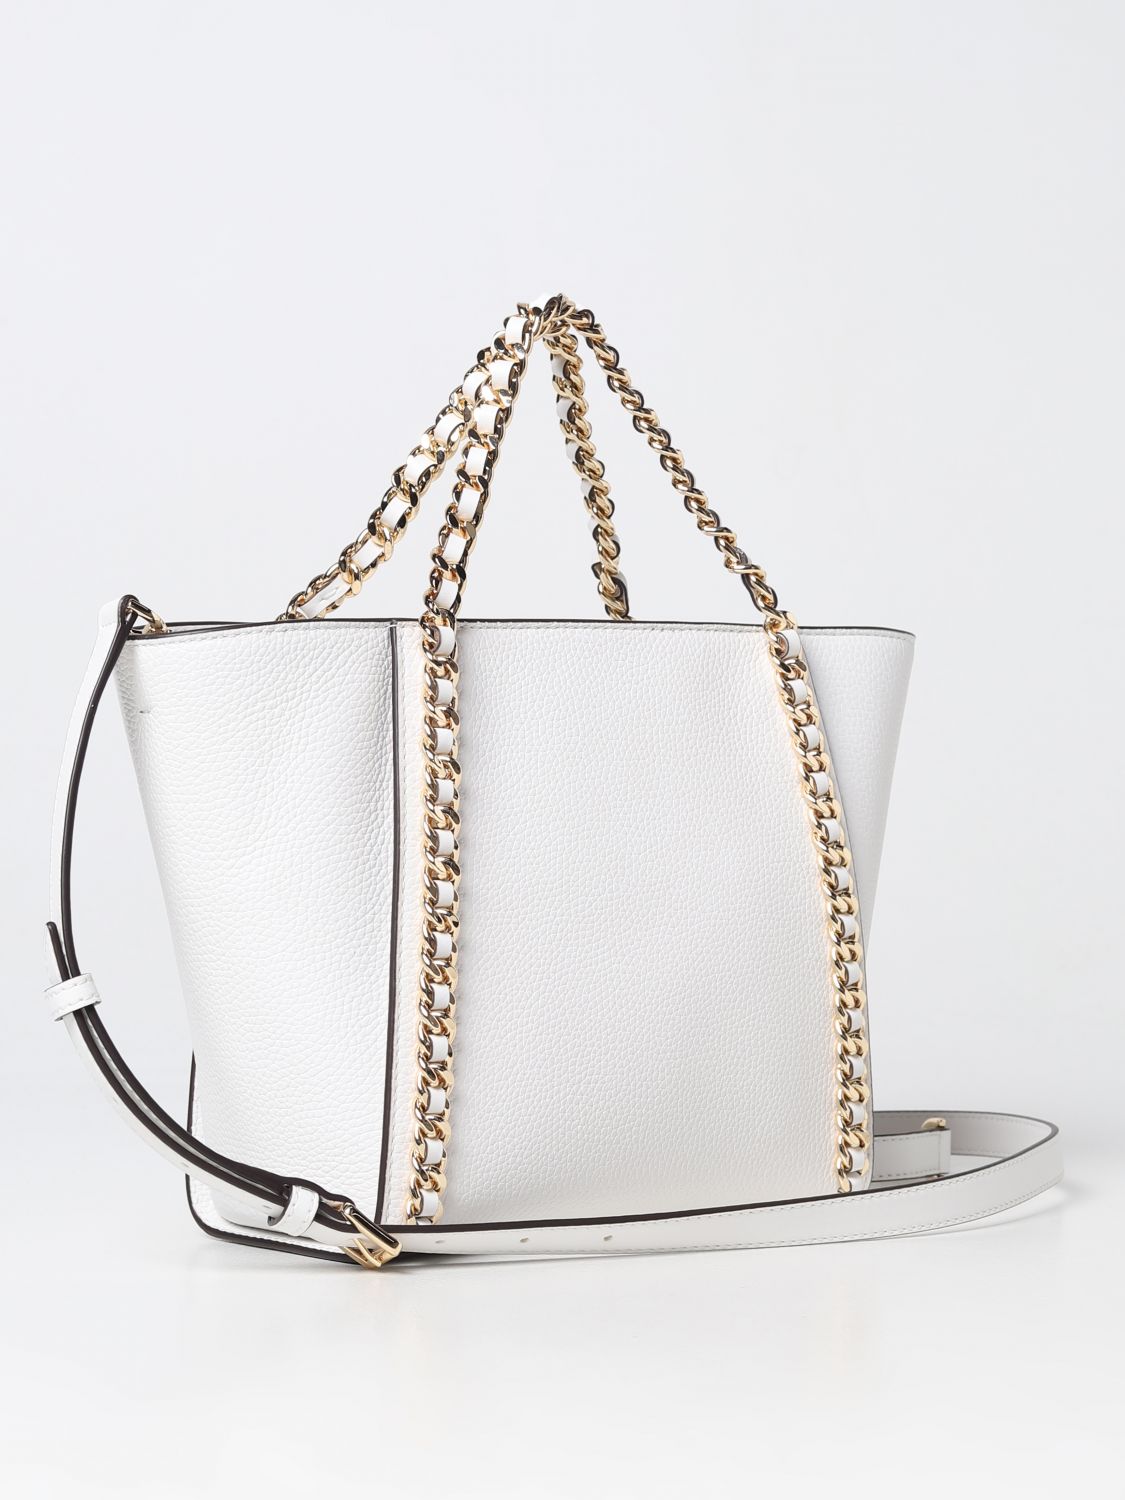 MICHAEL KORS: handbag for woman - White | Michael Kors handbag 30S3G5WT1L  online on 